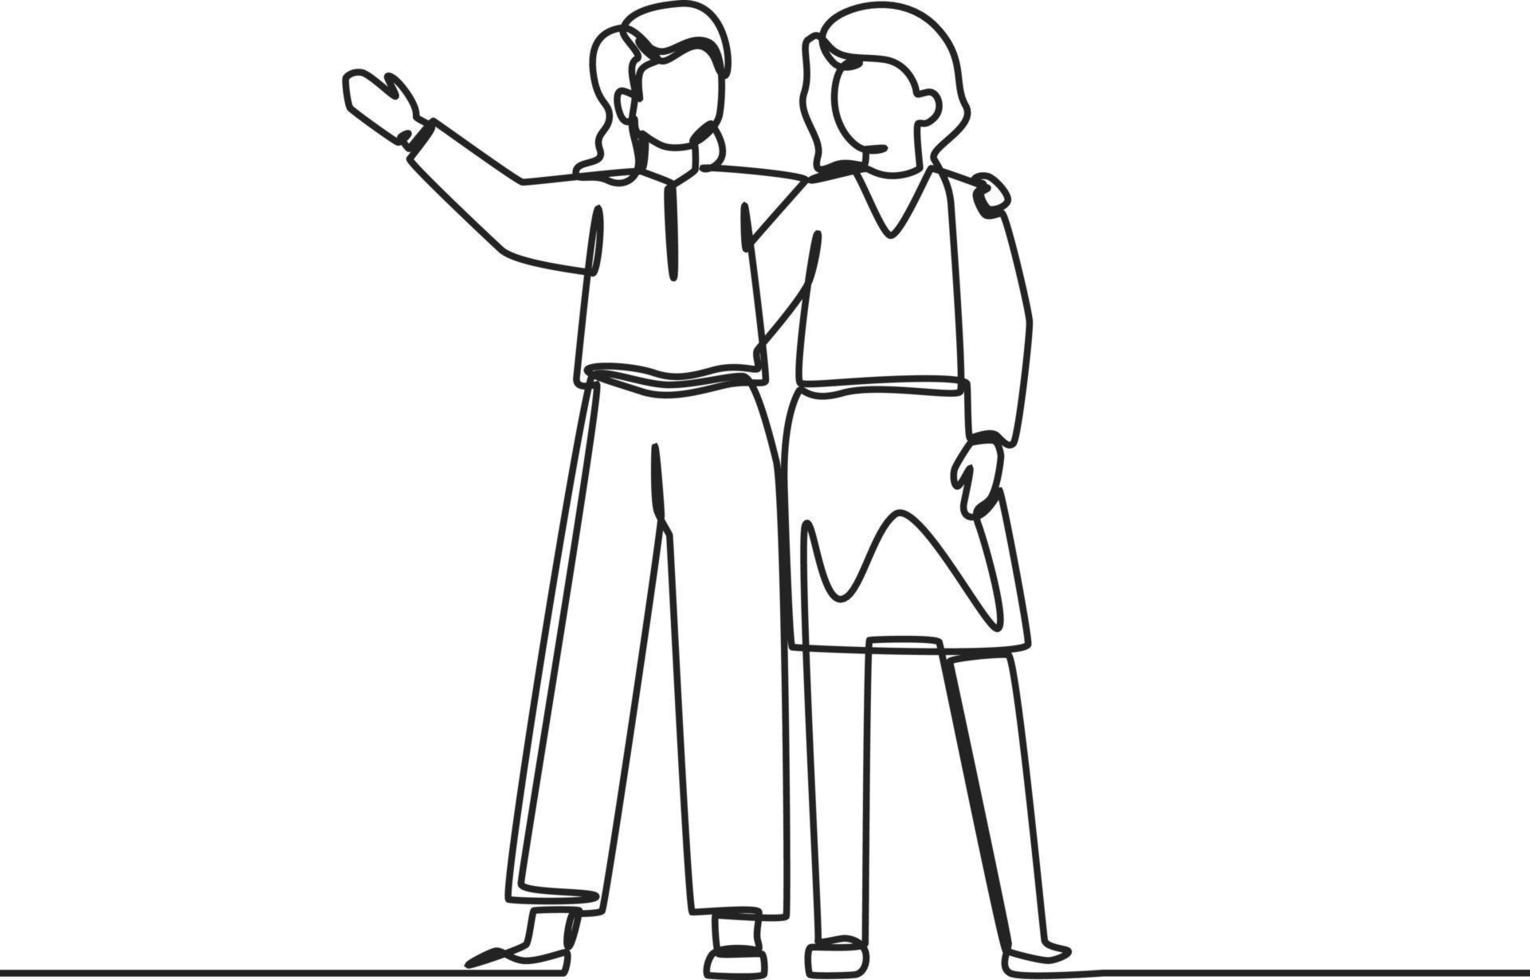 un dessin en ligne continue de deux jeunes femmes debout ensemble et posant l'une contre l'autre. jour de l'amitié. illustration graphique vectorielle de dessin à une seule ligne. vecteur